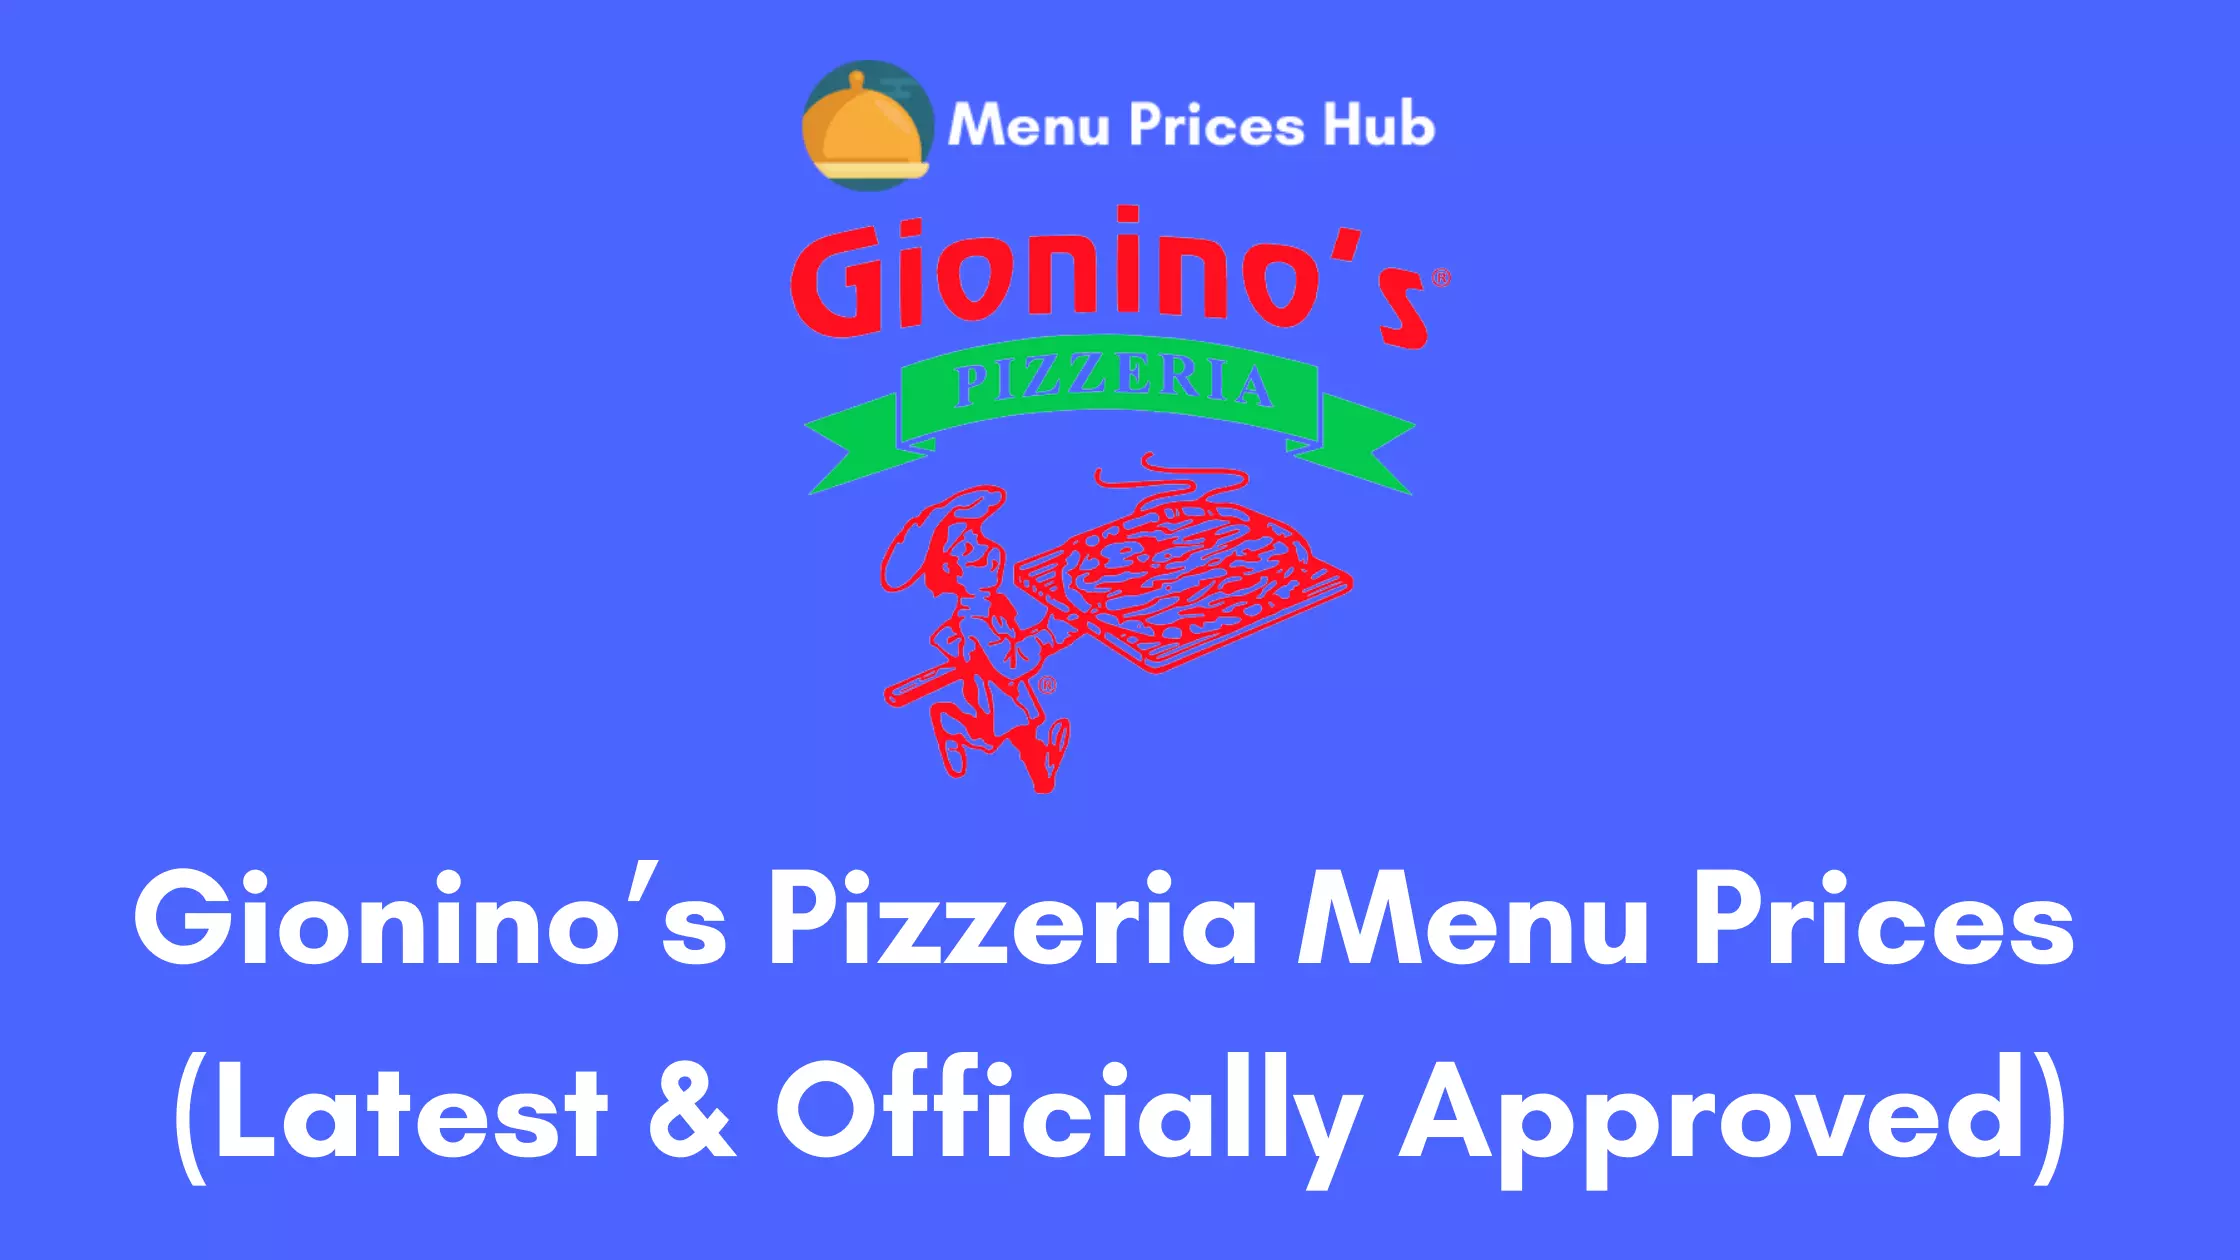 Gionino’s Pizzeria Menu Prices